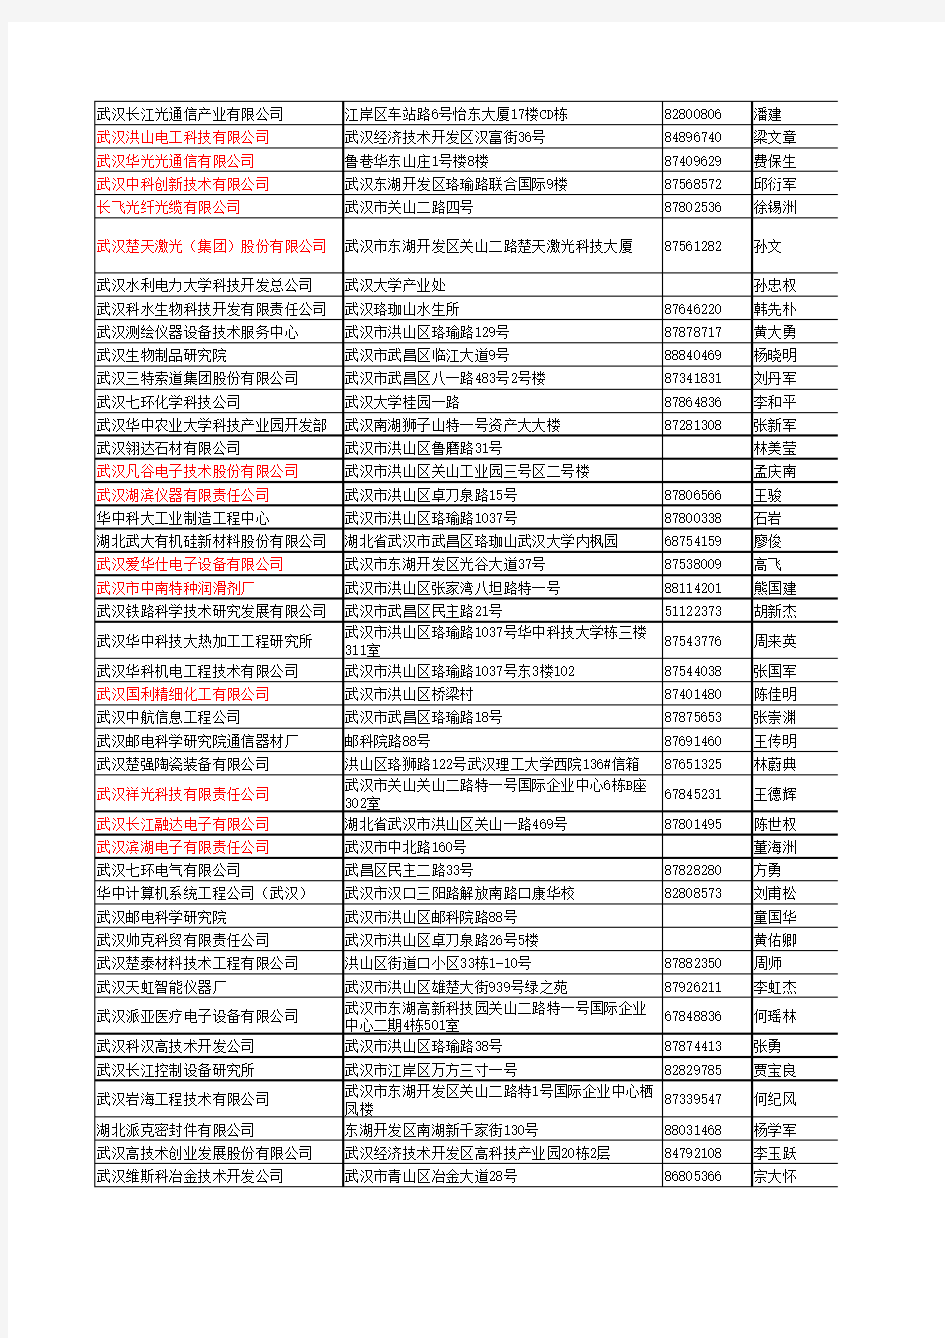 2010年10月武汉东湖新技术开发区企业完全名录3450家